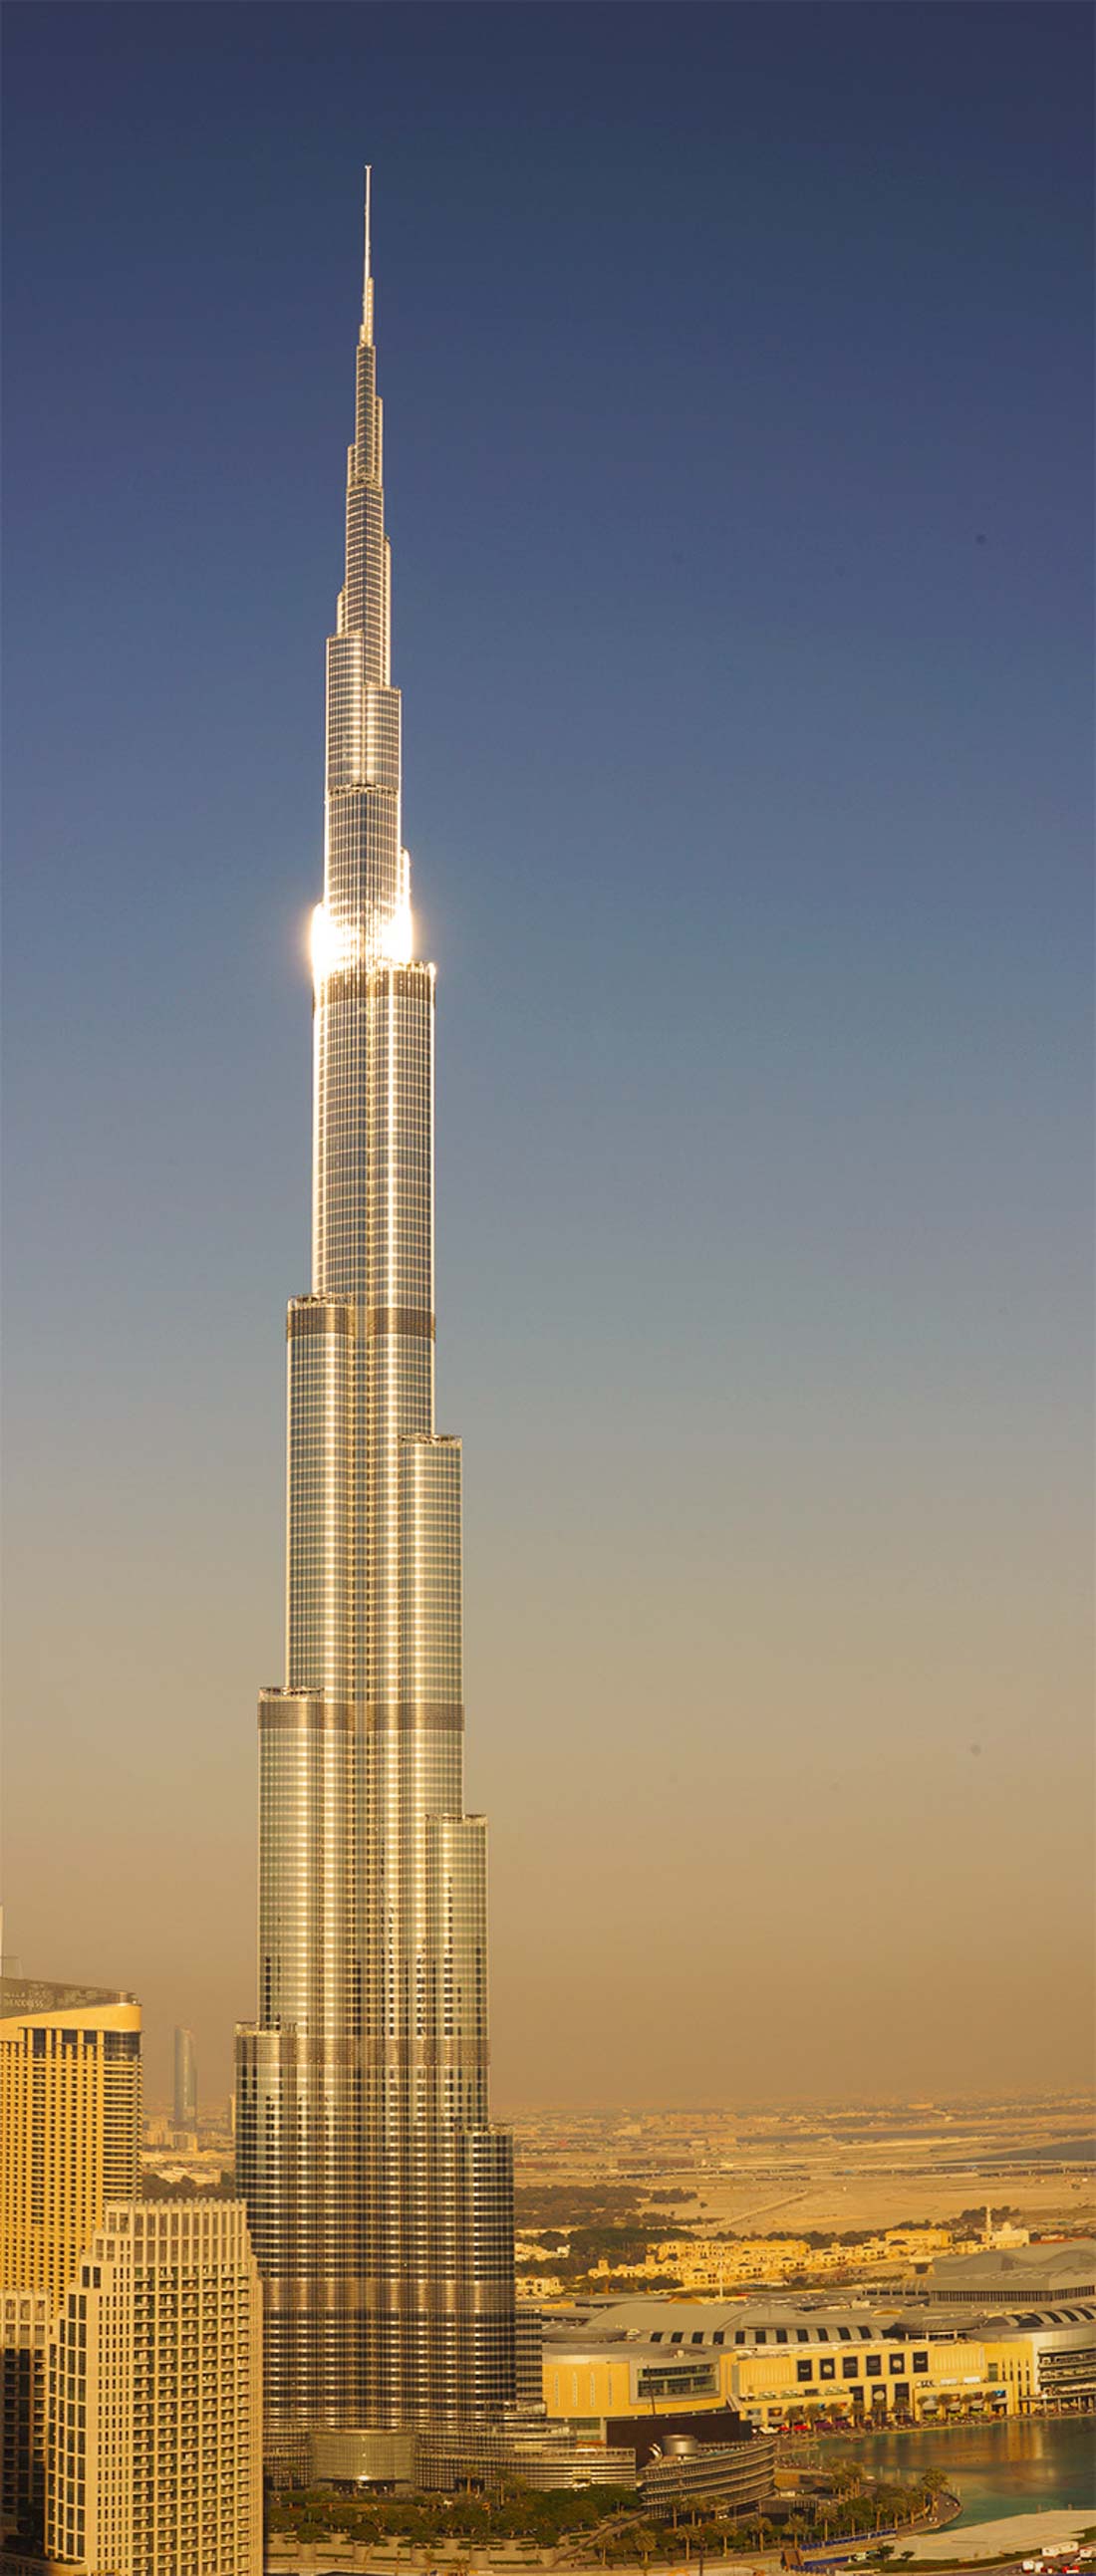 Бурдж халифа 148. Бурдж-Халифа Дубай 148 этаж. Дубай Бурдж Халифа смотровая площадка 124 этаж. Бурдж Халифа смотровая площадка на 148 этаже. Смотровая площадка Бурдж Халифа Дубай 148 этаж.